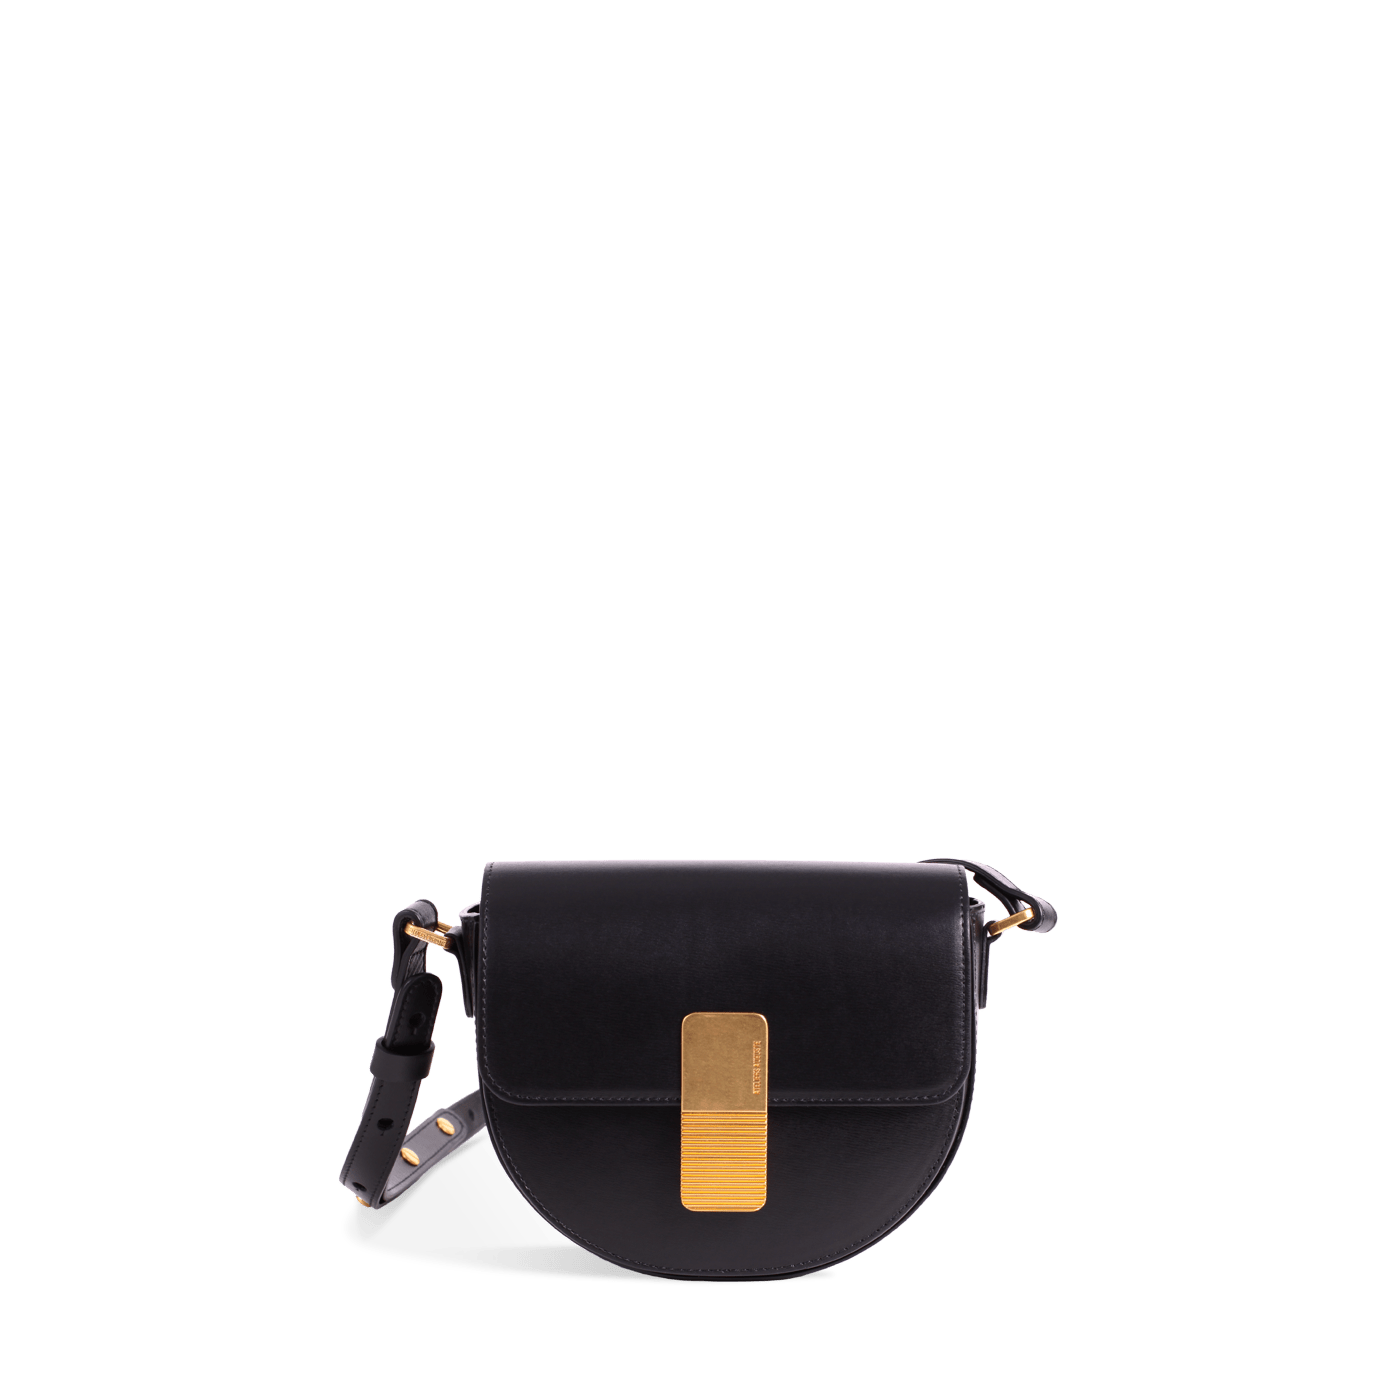 Mini sac à dos My first bag - Black & Gold